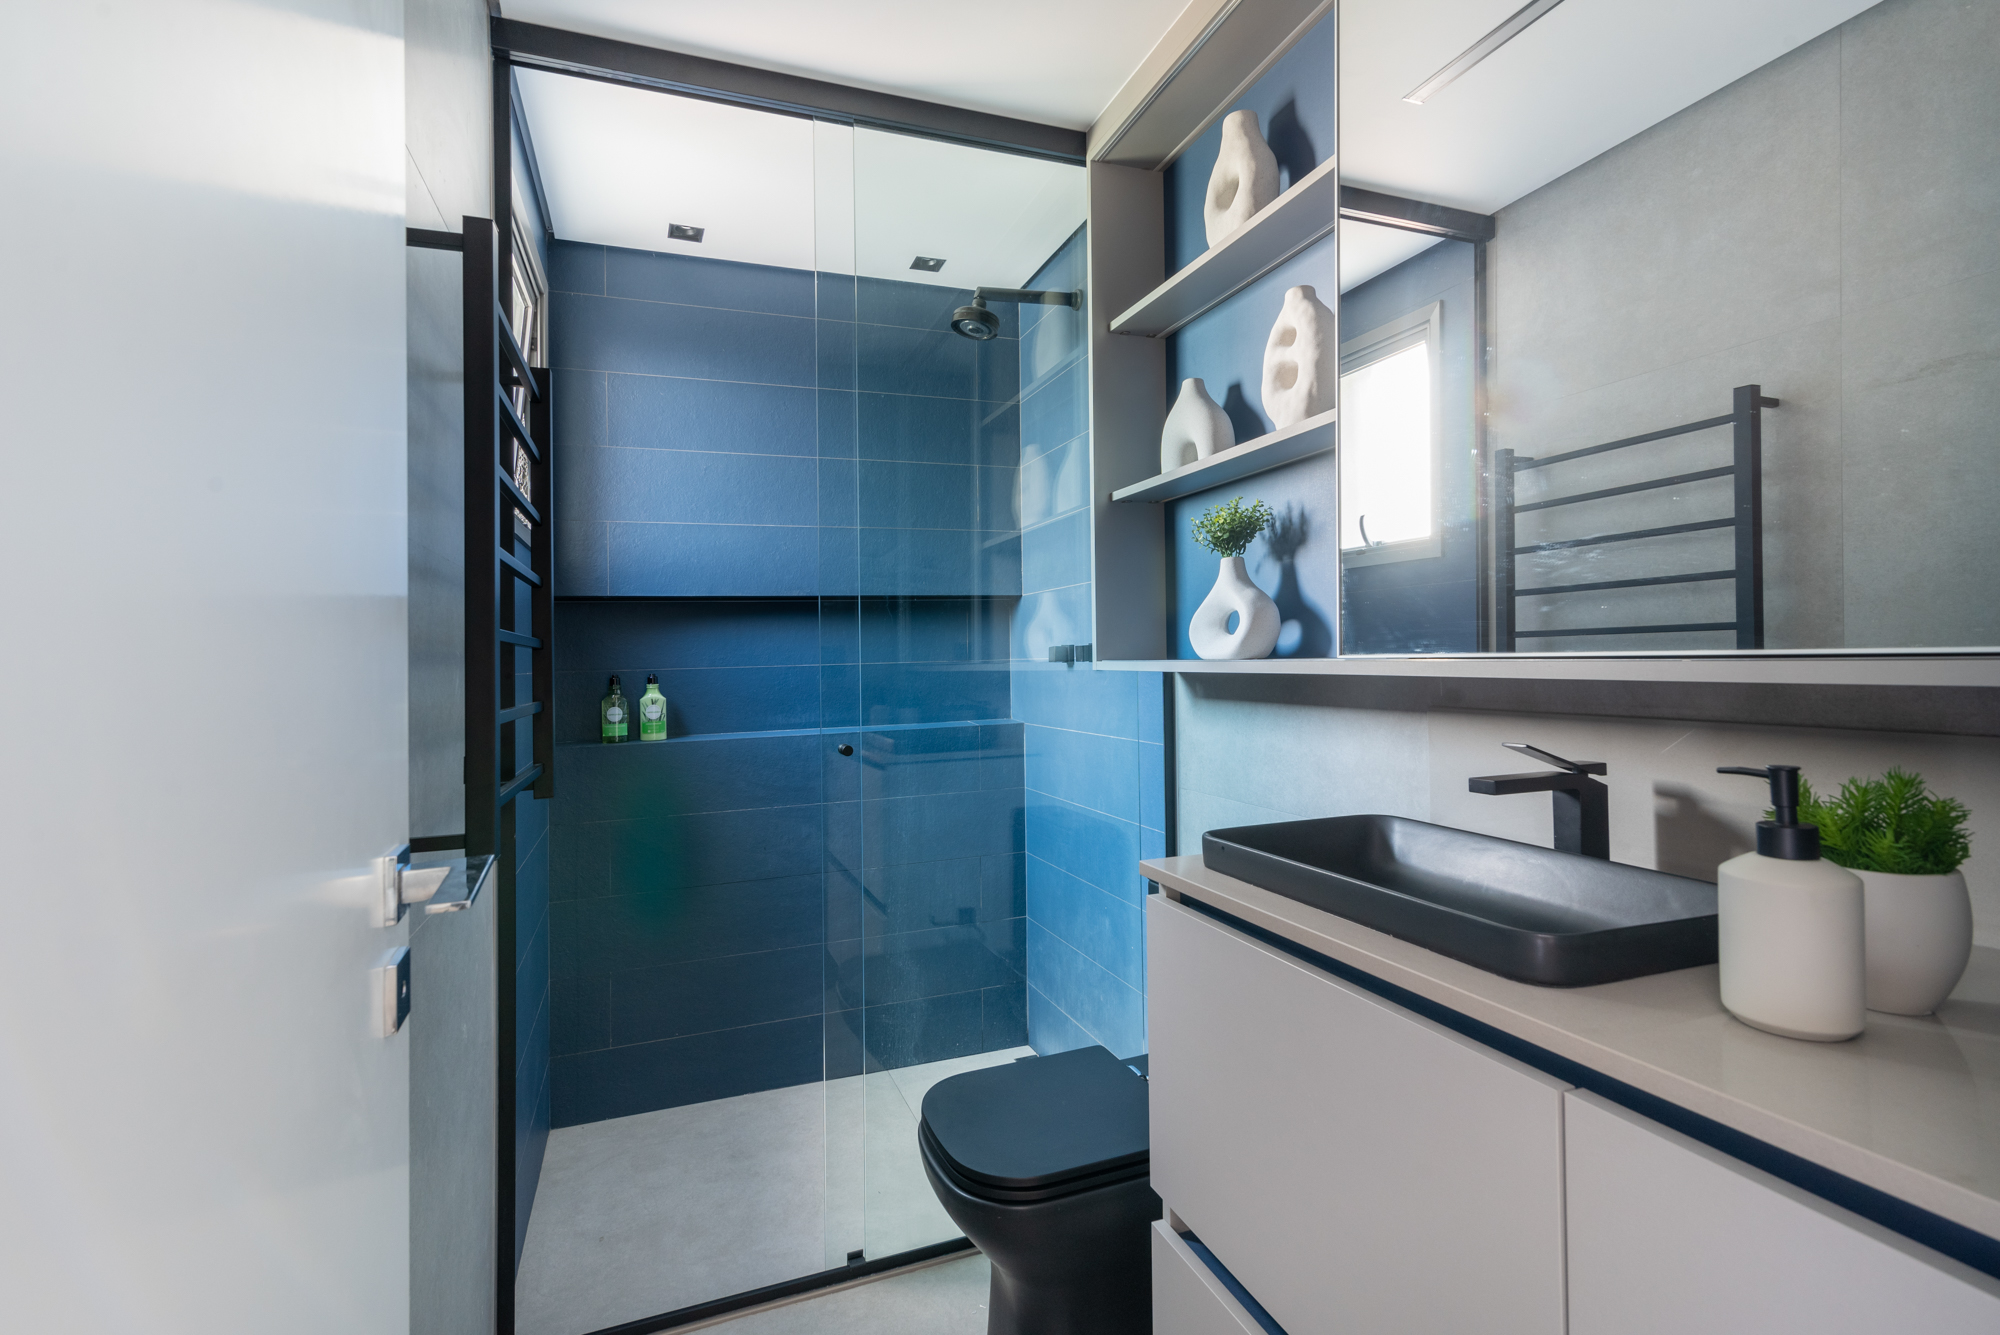 Apê de 79 m² tem mesa suspensa na sala de jantar e toalheiro elétrico no banheiro. Projeto de Red Square Arquitetura. Na foto, banheiro com metais pretos e azulejos azuis no box.